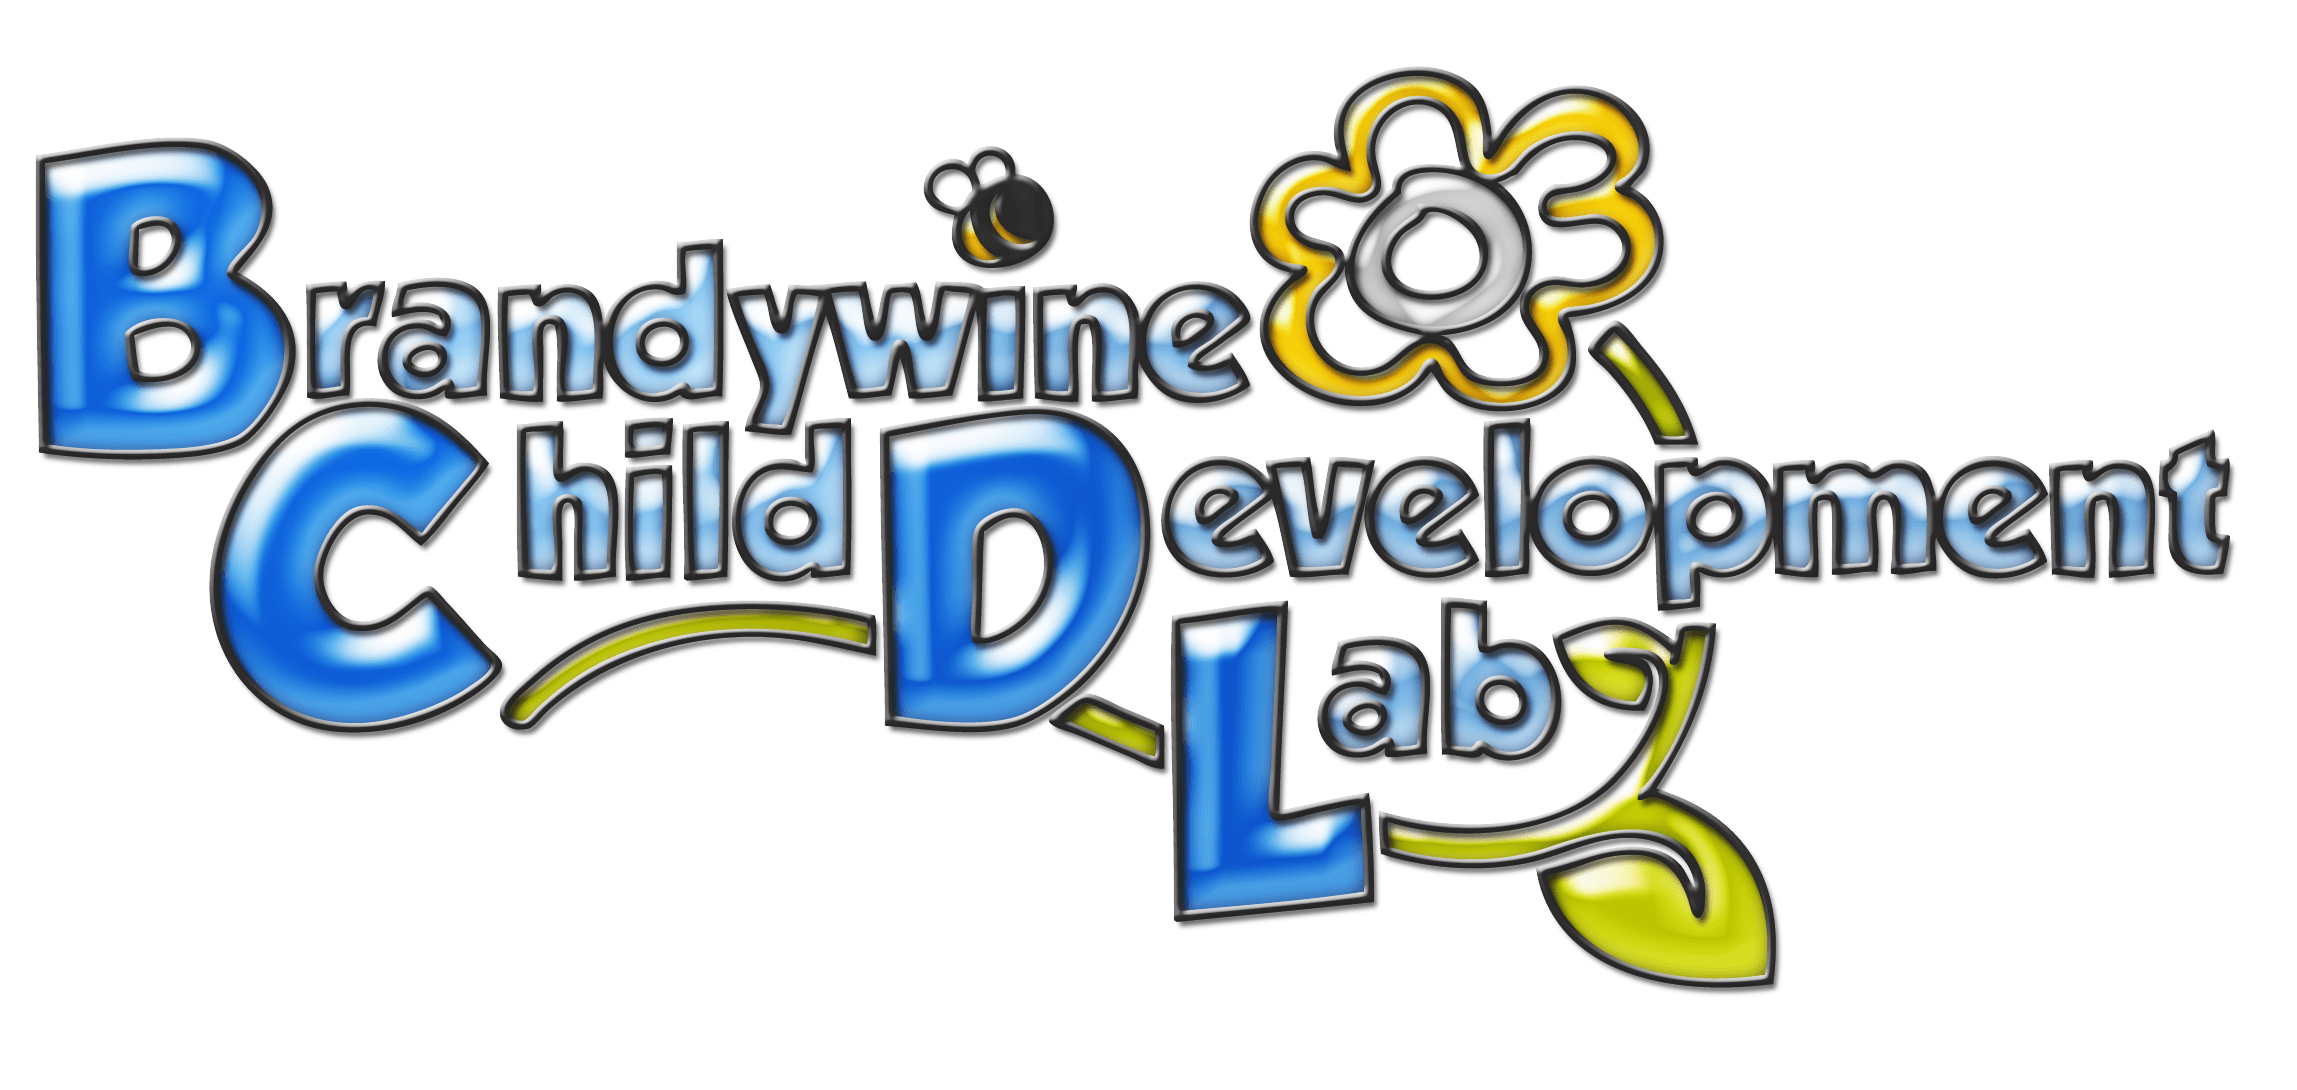 Brandywine Child Development Lab